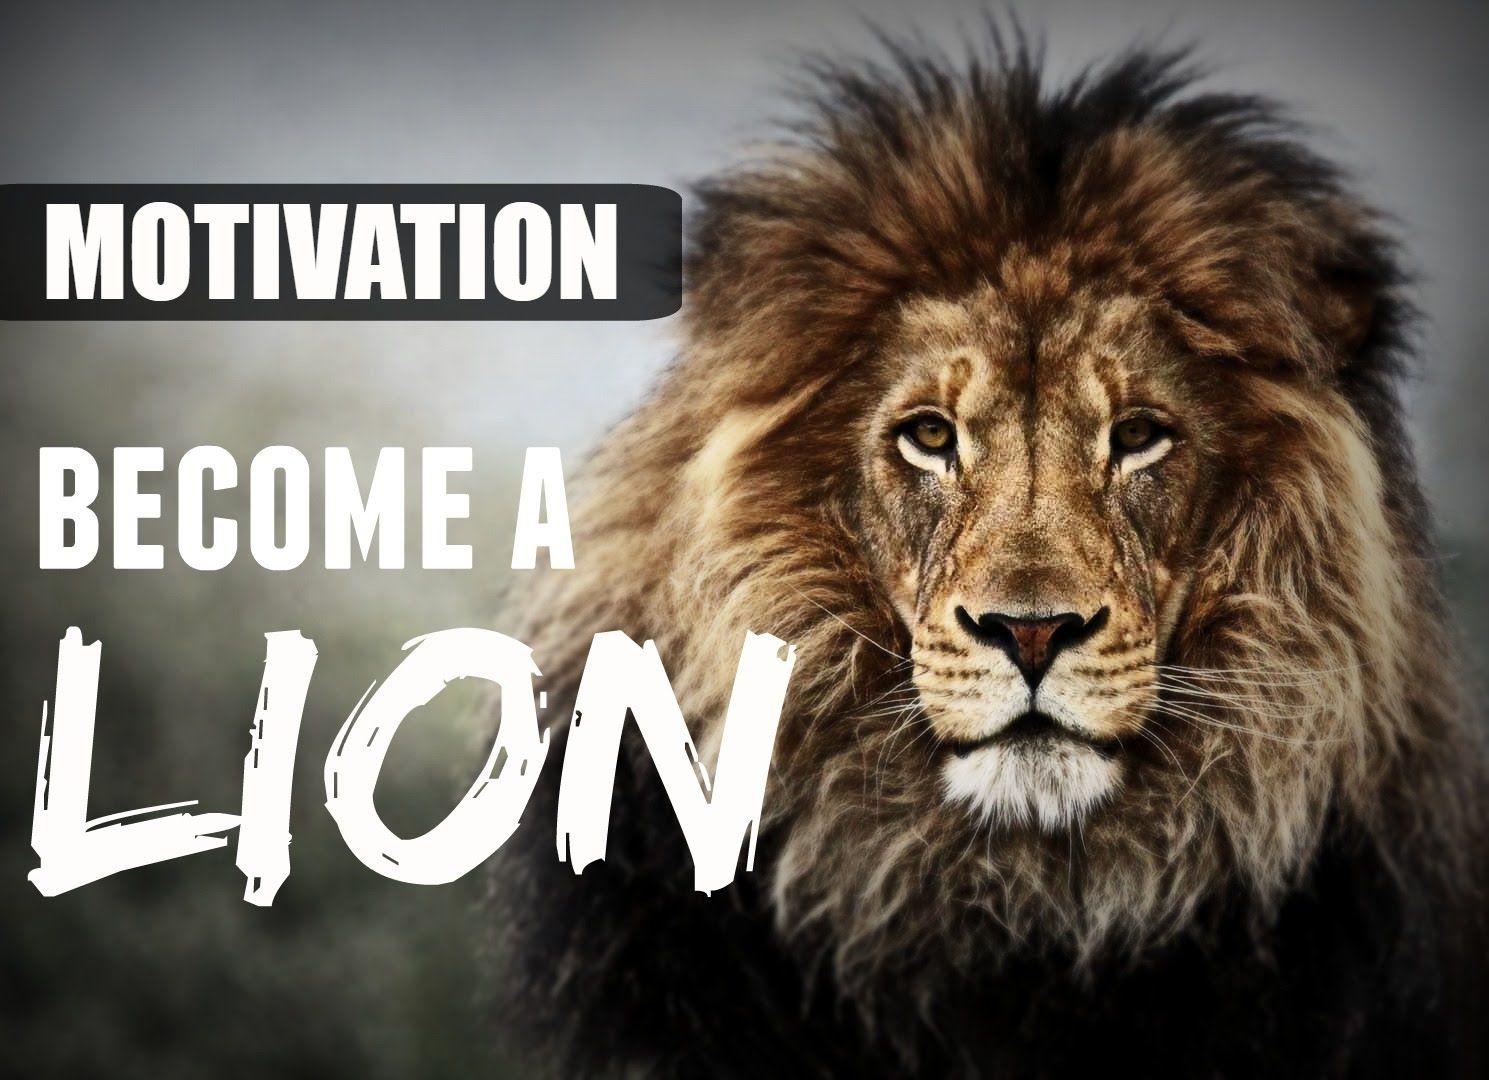 MOTIVATION A LION